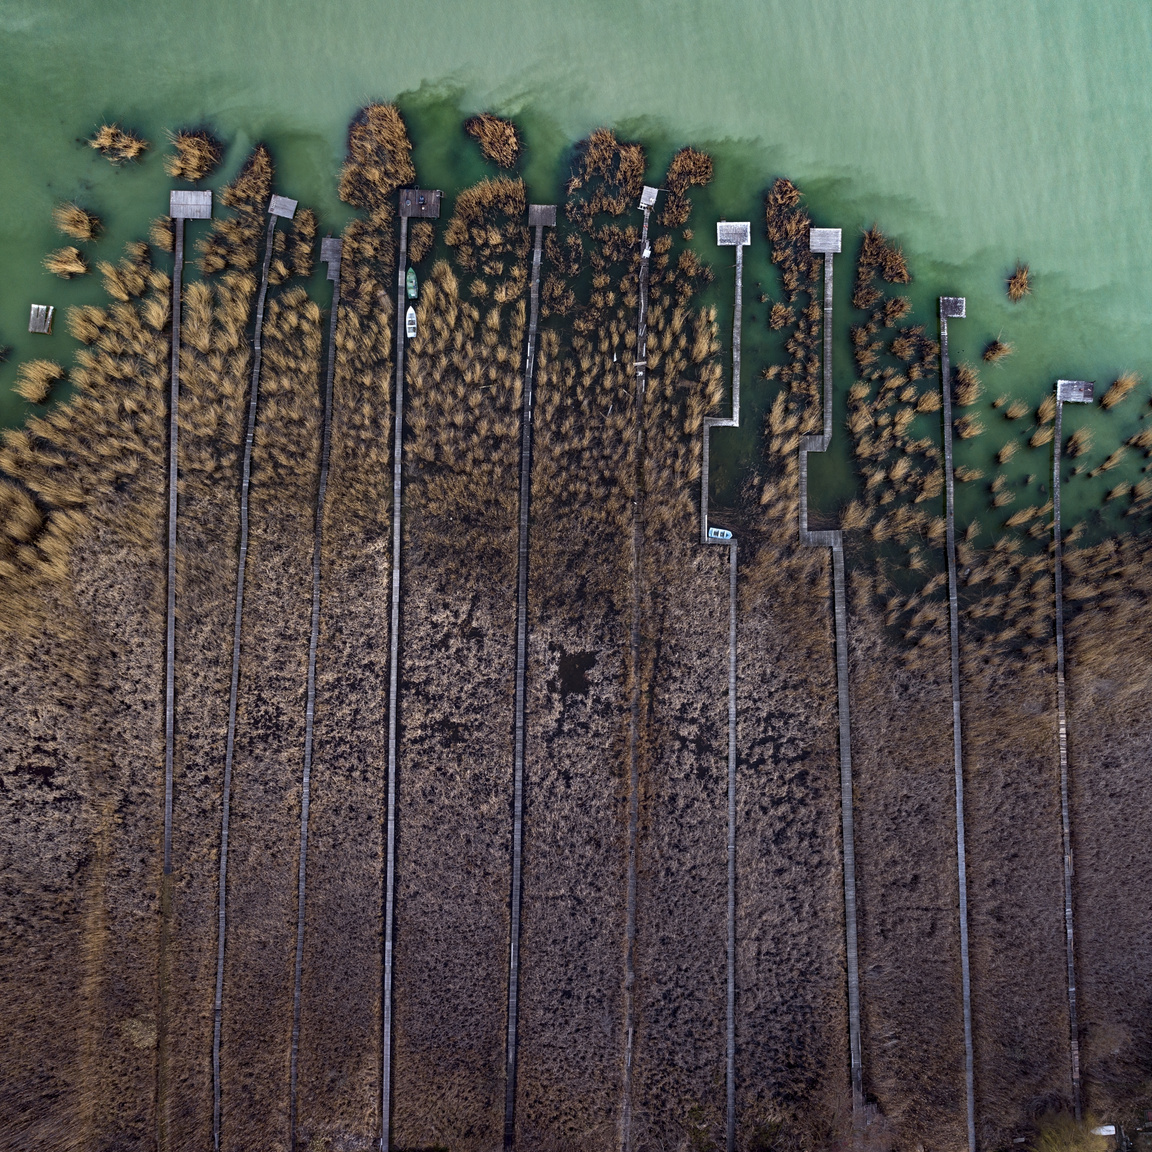 Balatoni stégek
                        A Balaton északi partján található mólók, amelyek a hosszú nádason keresztül kötnek össze minden egyes nyaralót a hozzá tartozó csónak-beállókkal és horgász-helyekkel.
                        Ábrahámhegy, Magyarország, 2019